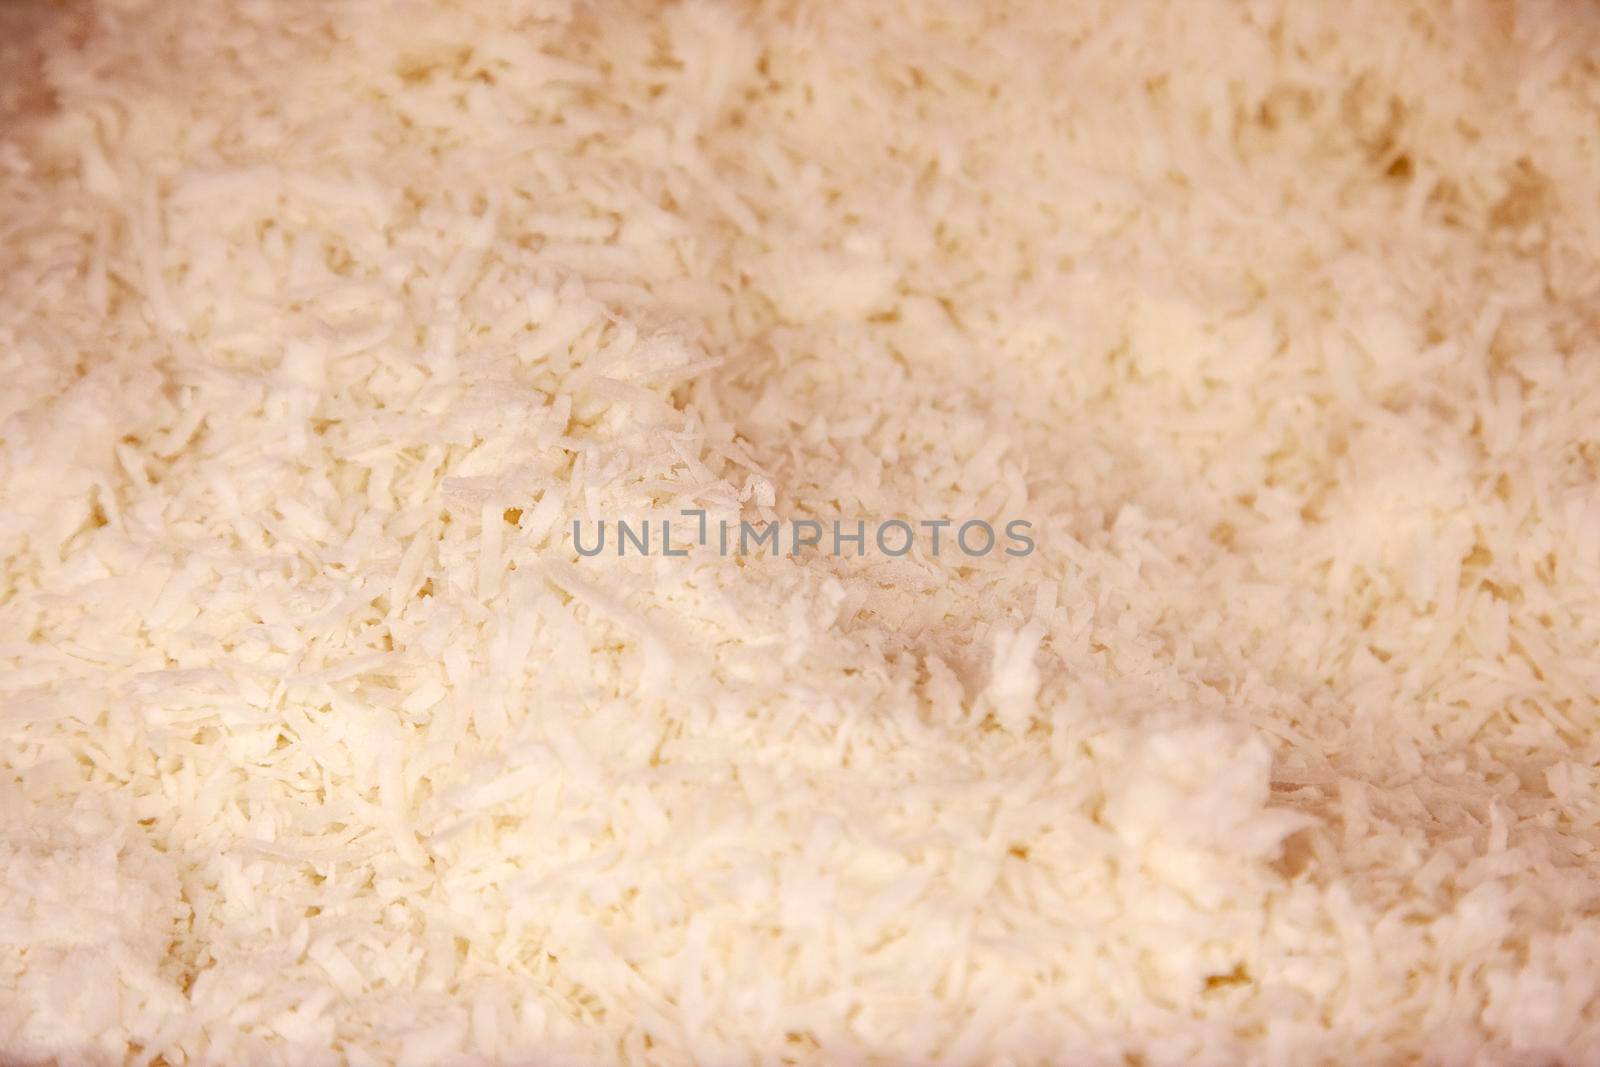  white shredded coconut in a bin for eating or baking 